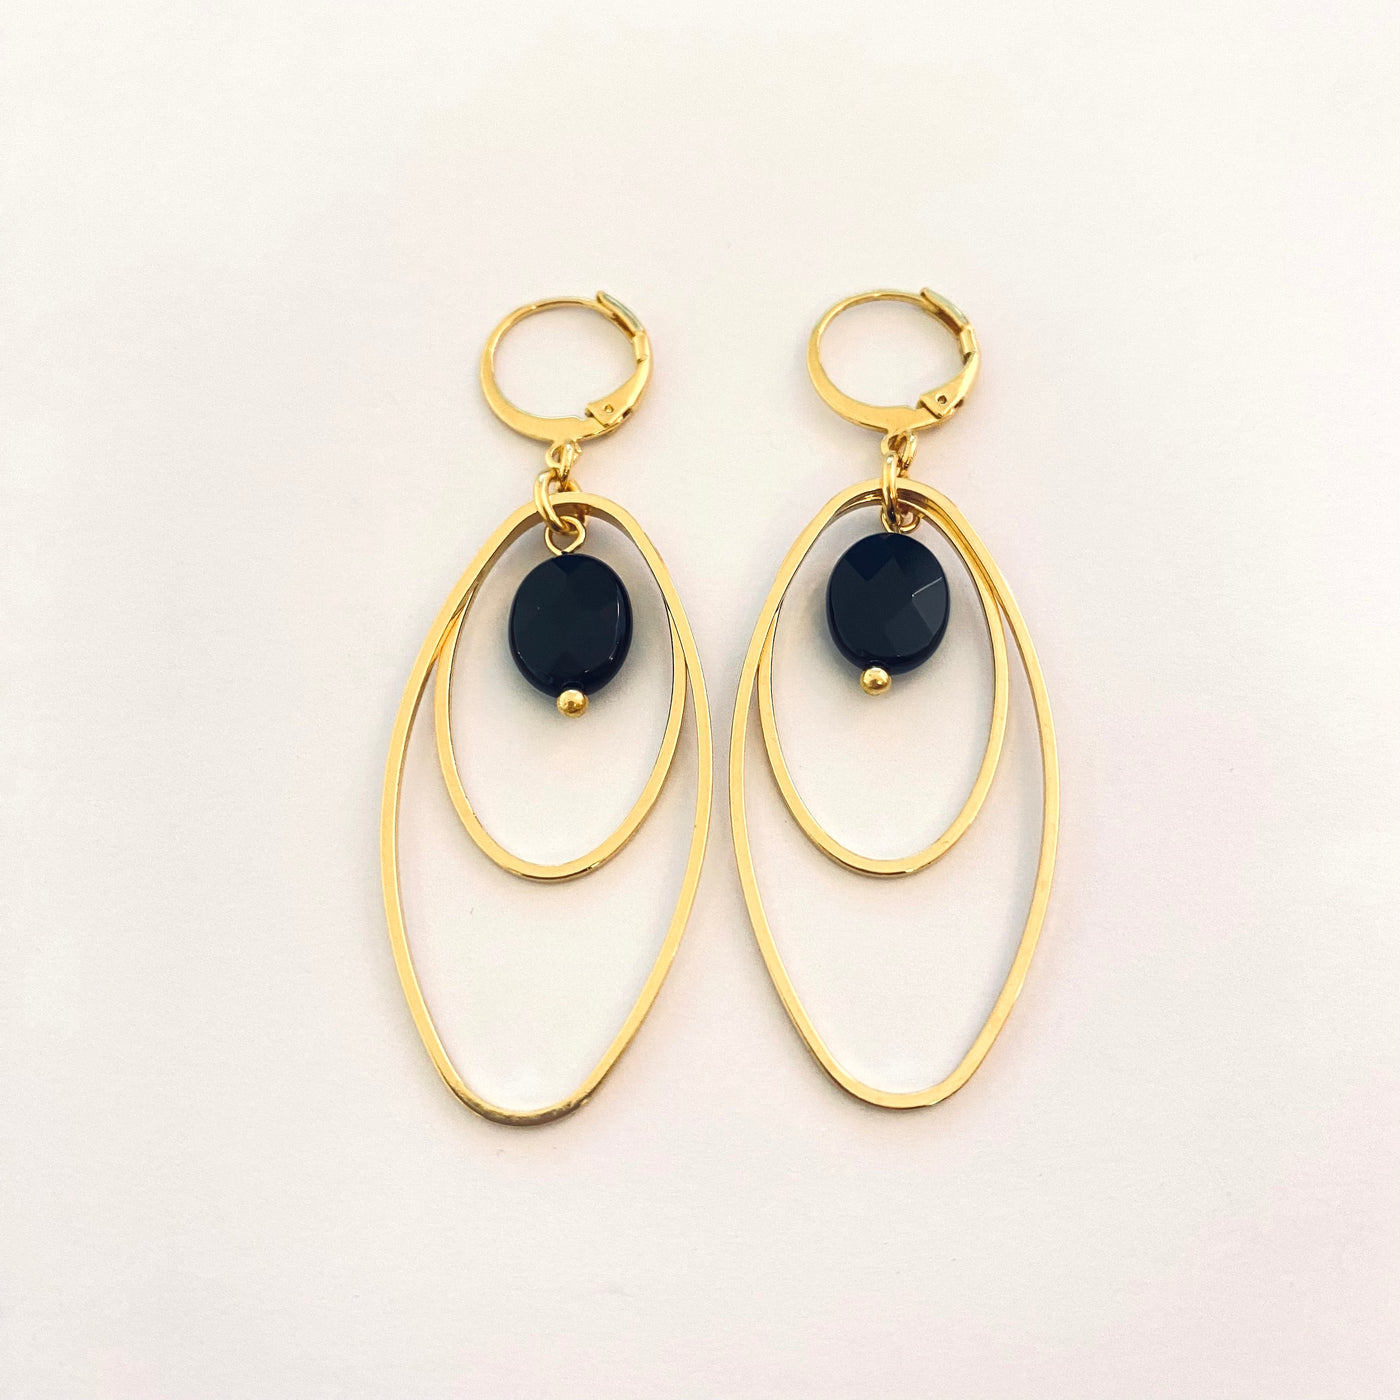 HAZEL - Black gold plated earrings